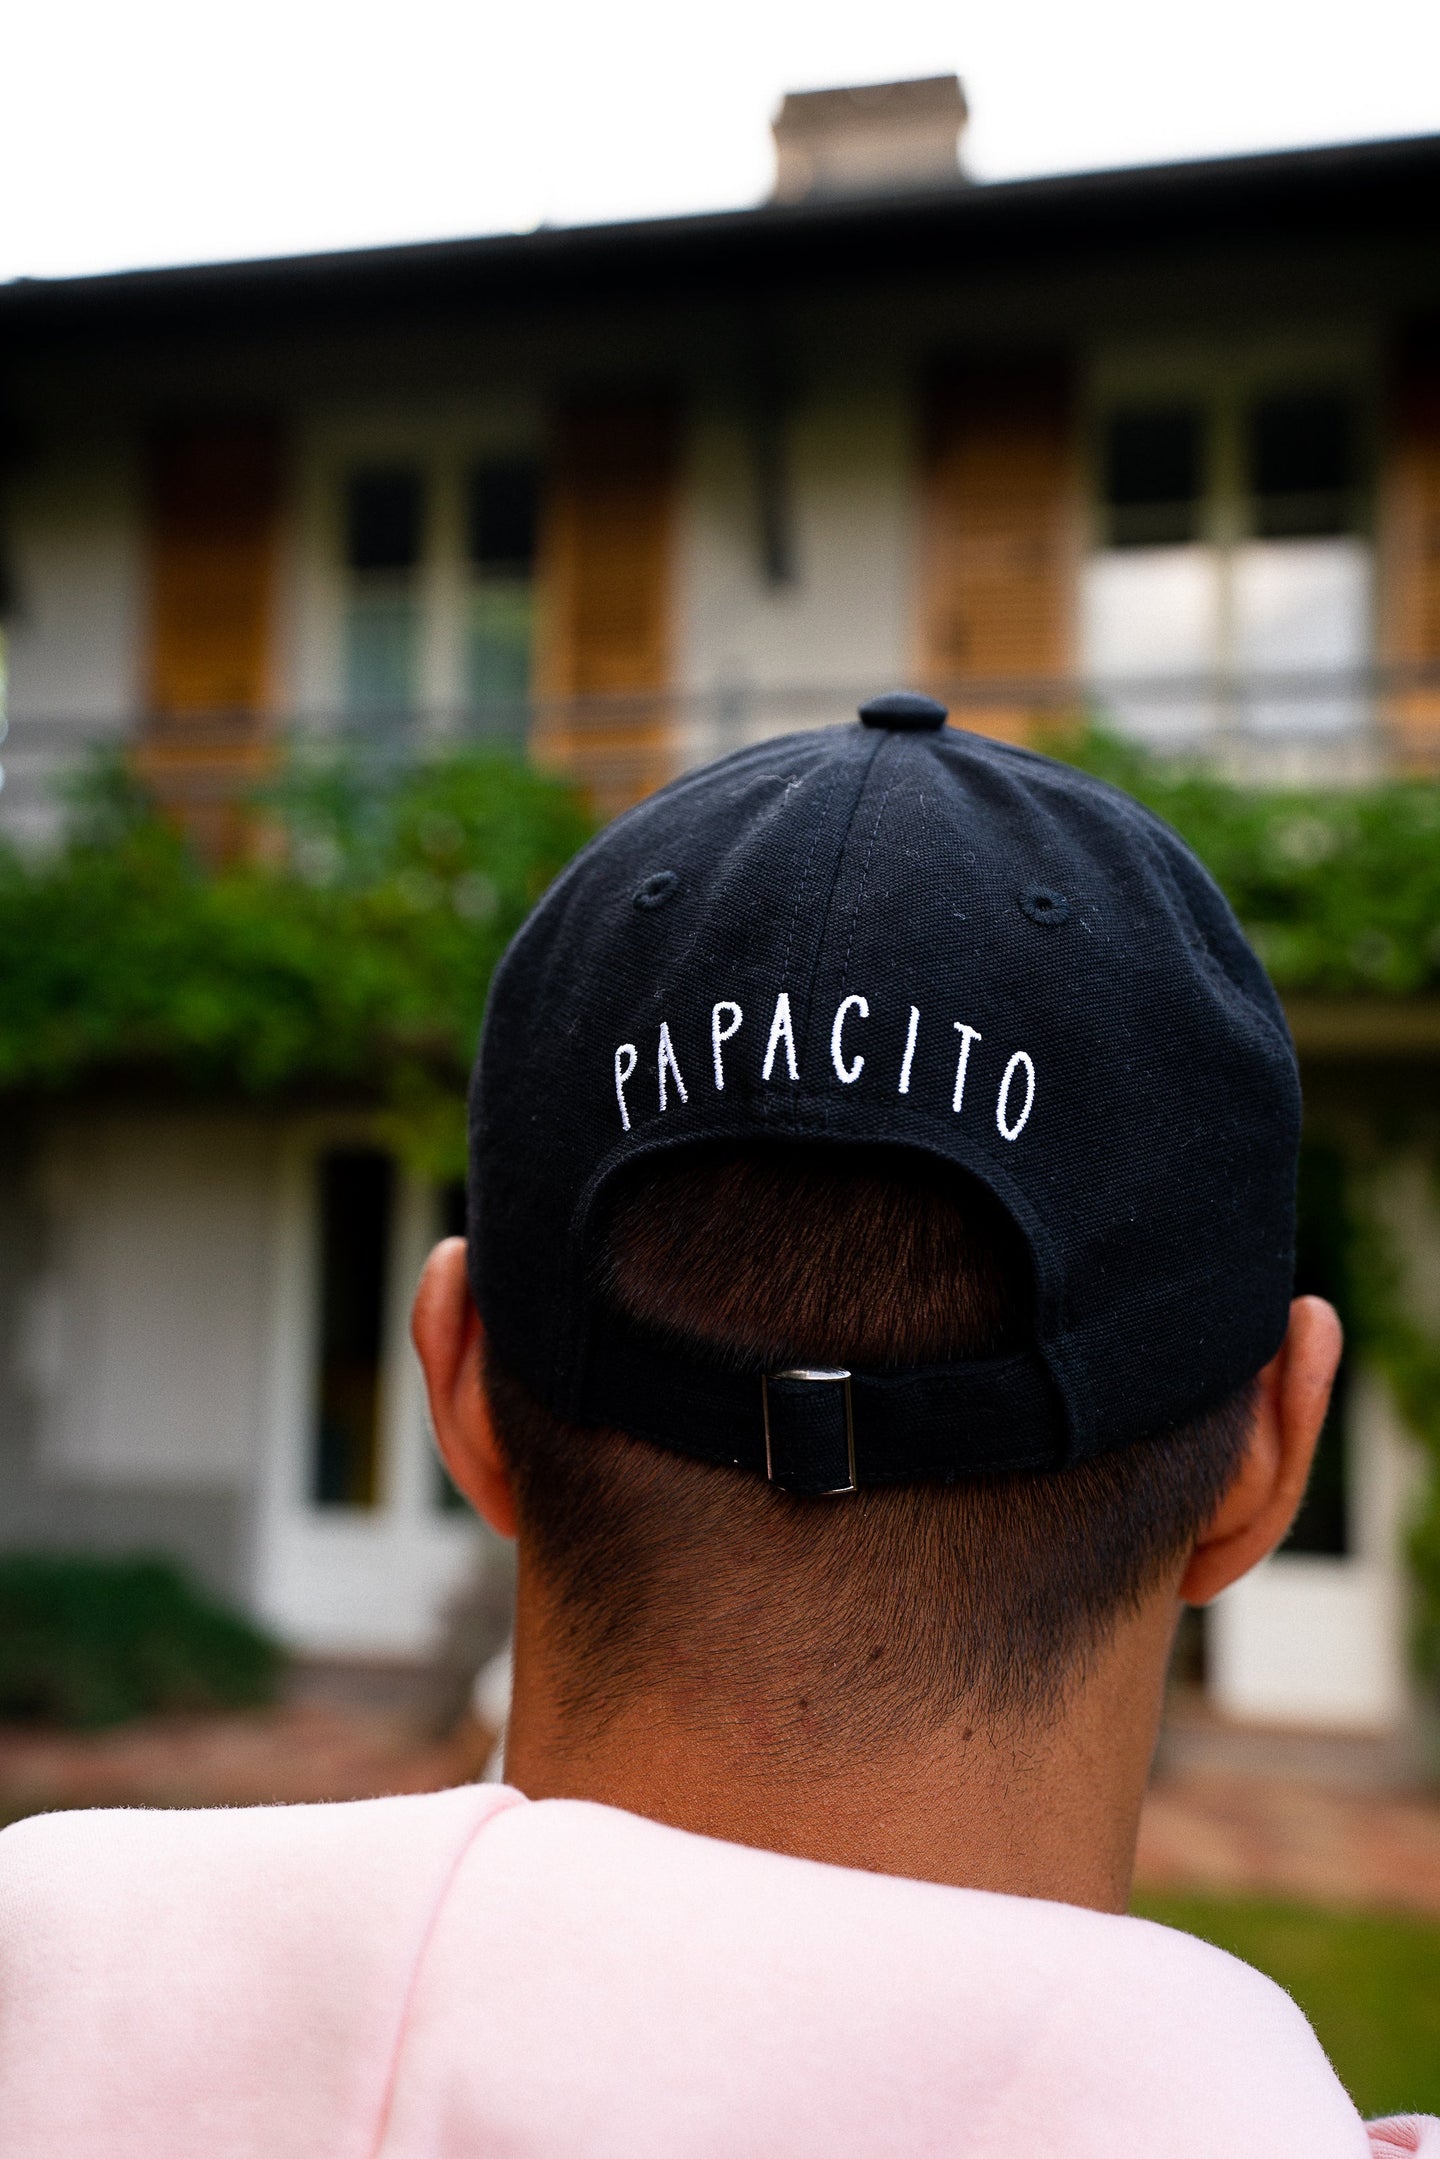 Casquette homme "Papacito" en coton bio, brodée d'un message affectueux et original.